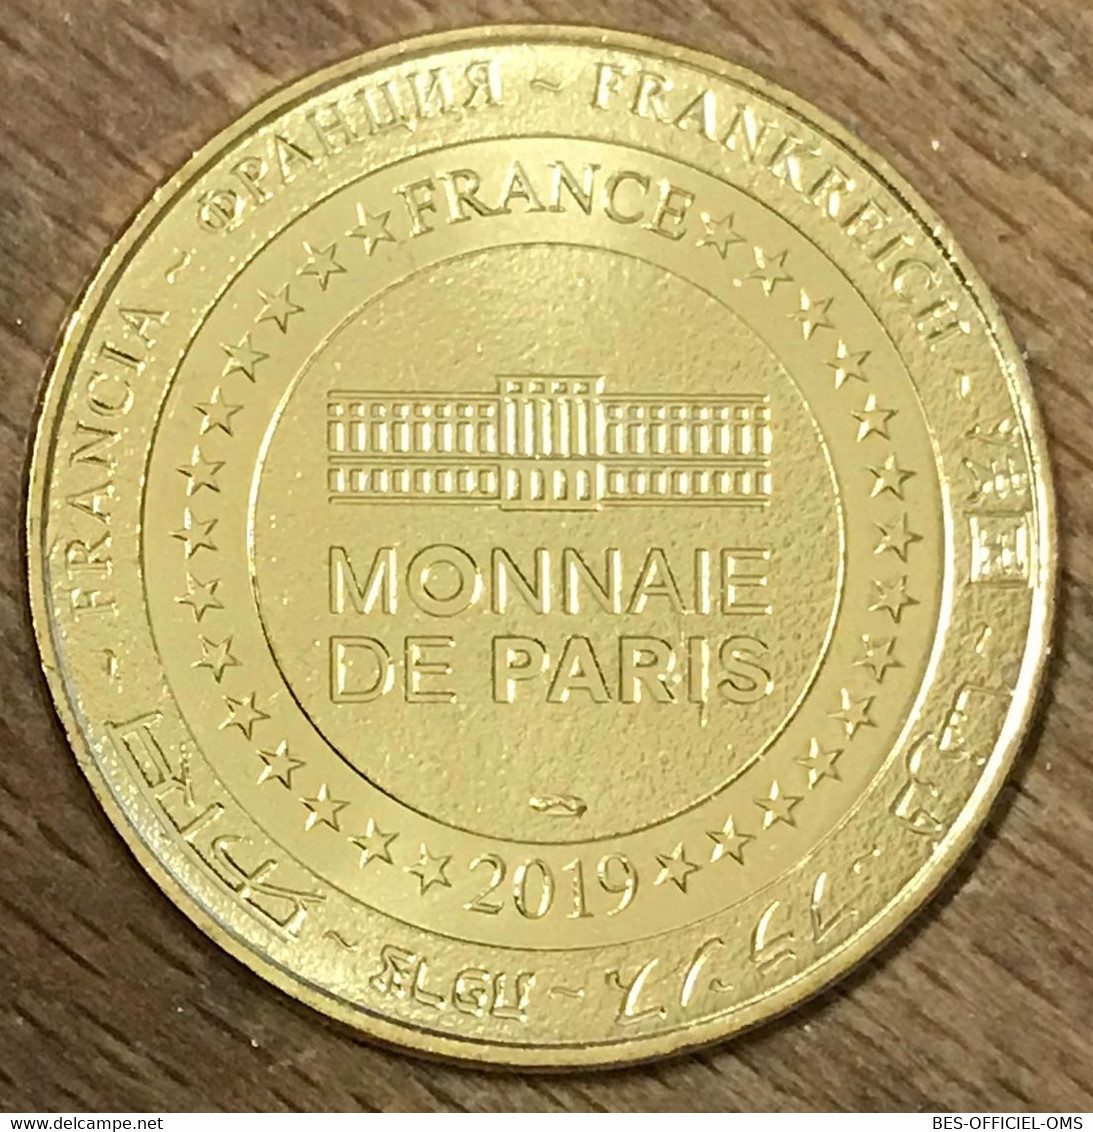 98 MONACO MUSÉE OCÉANOGRAPHIQUE MDP 2019 MÉDAILLE SOUVENIR MONNAIE DE PARIS JETON TOURISTIQUE MEDALS COINS TOKENS - 2019